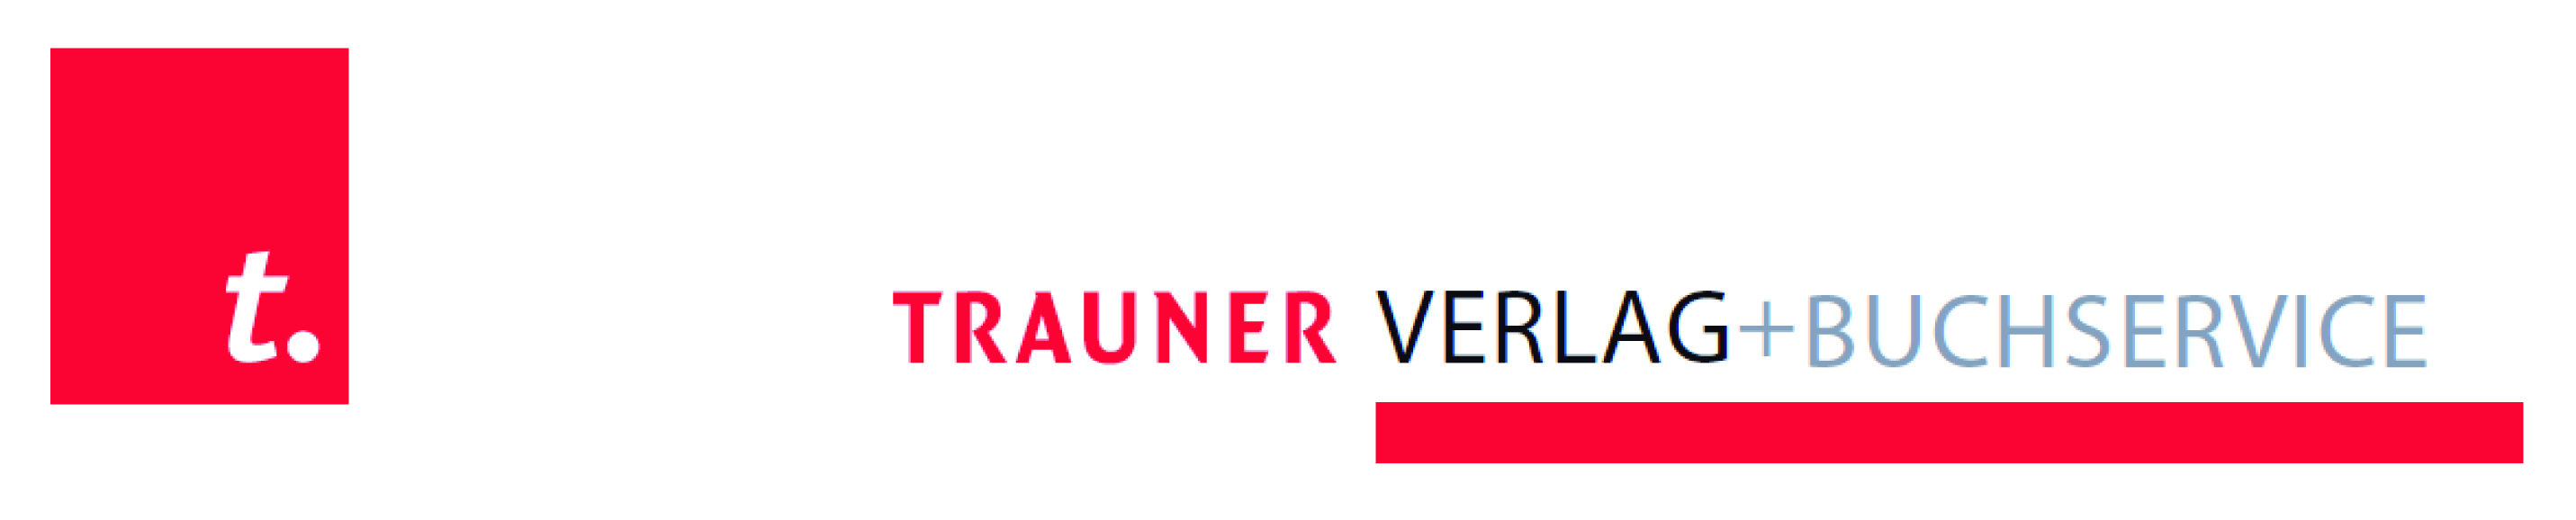 TRAUNER Verlag + Buchservice GmbH_logo